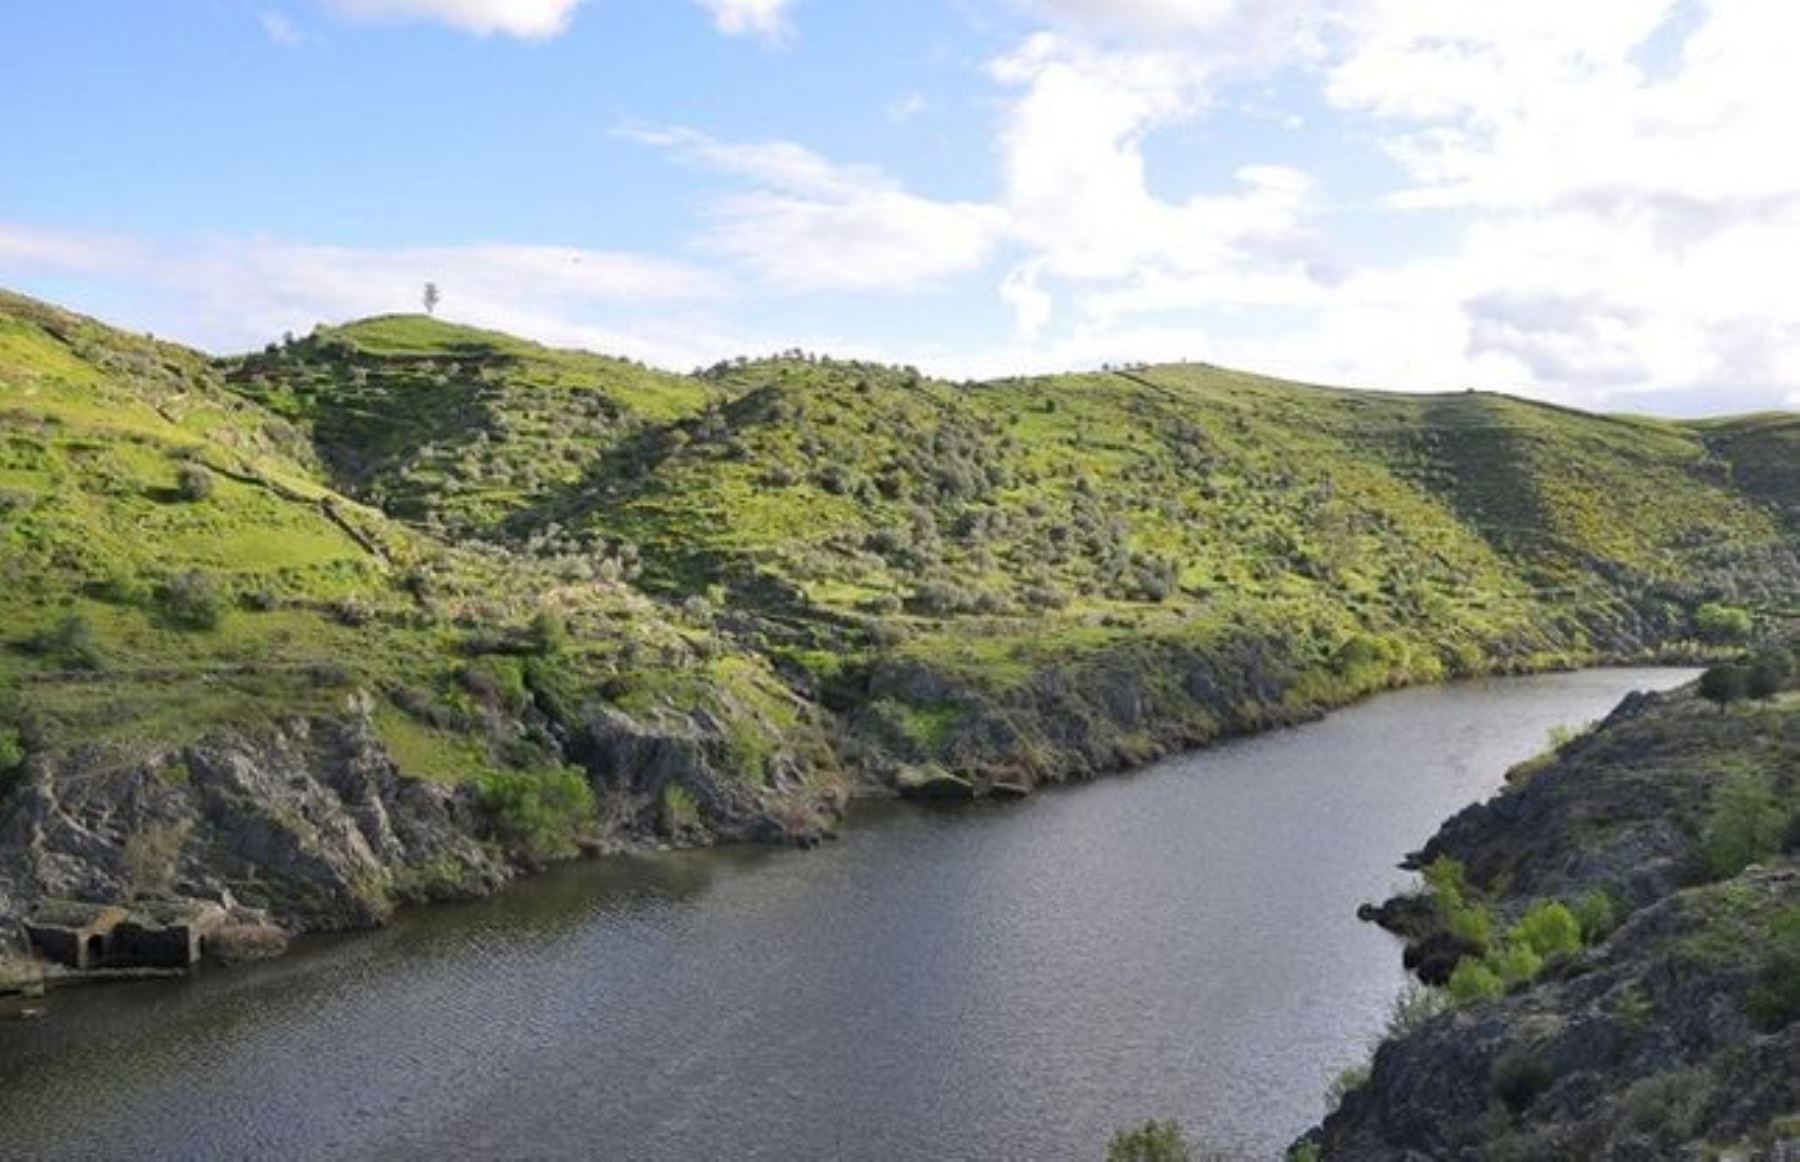 La única reserva transfronteriza agregada es la del Tajo/Tejo, que tiene como eje principal al río Tajo, al oeste de la Península Ibérica que comparten Portugal y España. Foto: INTERNET/Medios